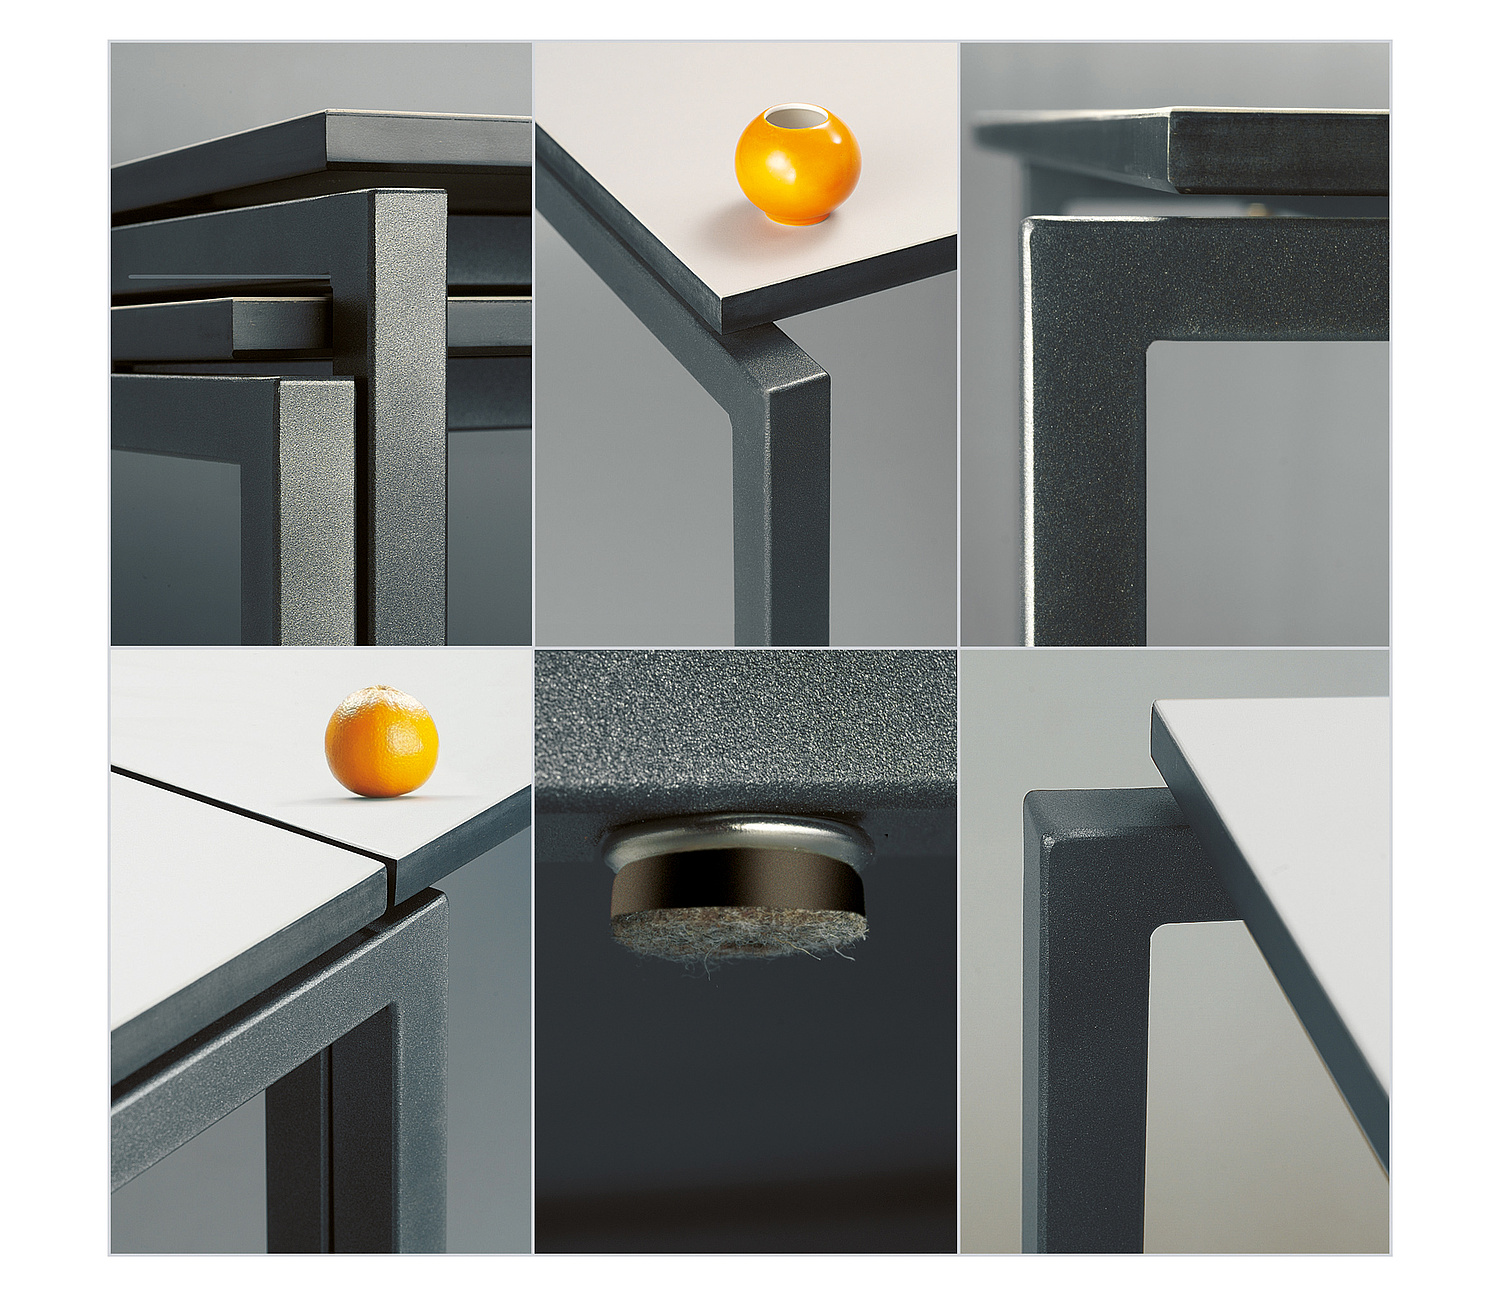 Detailansichten Tisch mit Darstellung zum stapeln, Oberfläche, Koppelung von zwei Tischen (© Papenfuss | Atelier)